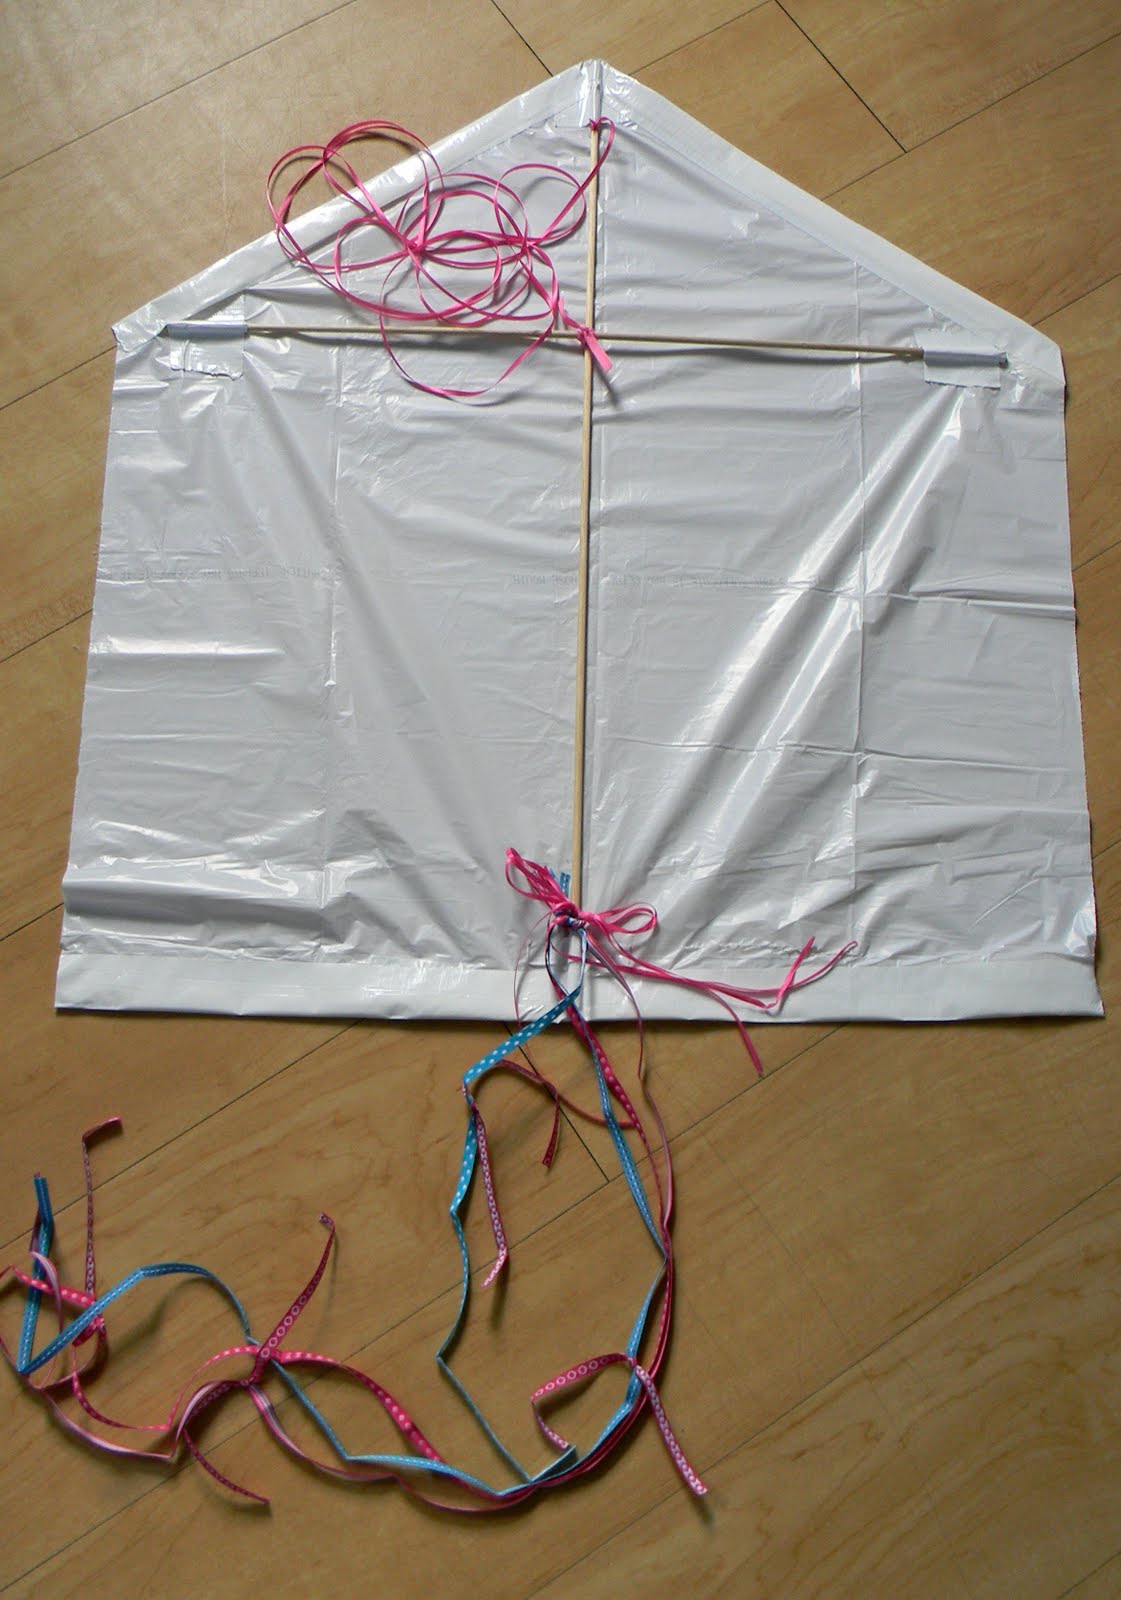 DIY Trash Bag Kite